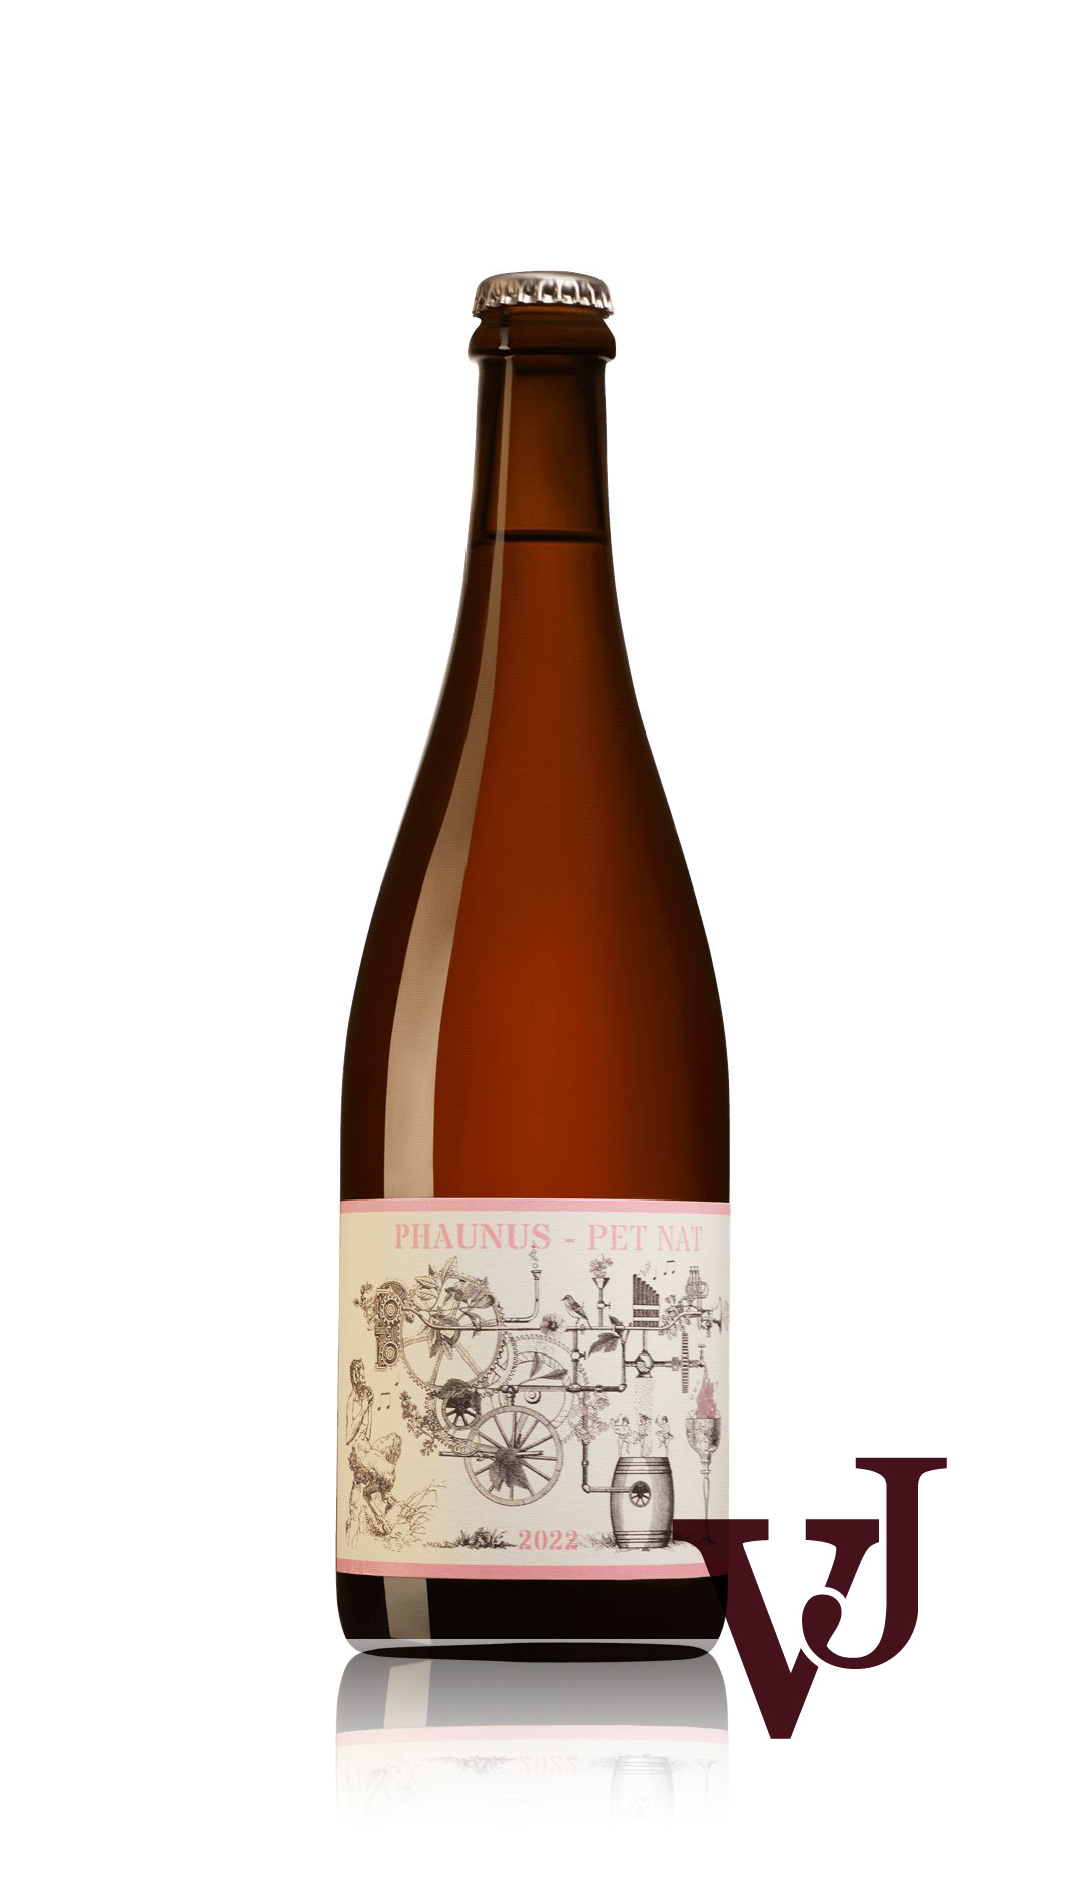 Mousserande Vin - Aphros Phaunus PET NAT Rosé 2022 artikel nummer 9414701 från producenten Adega Aphros Wine från området Portugal.